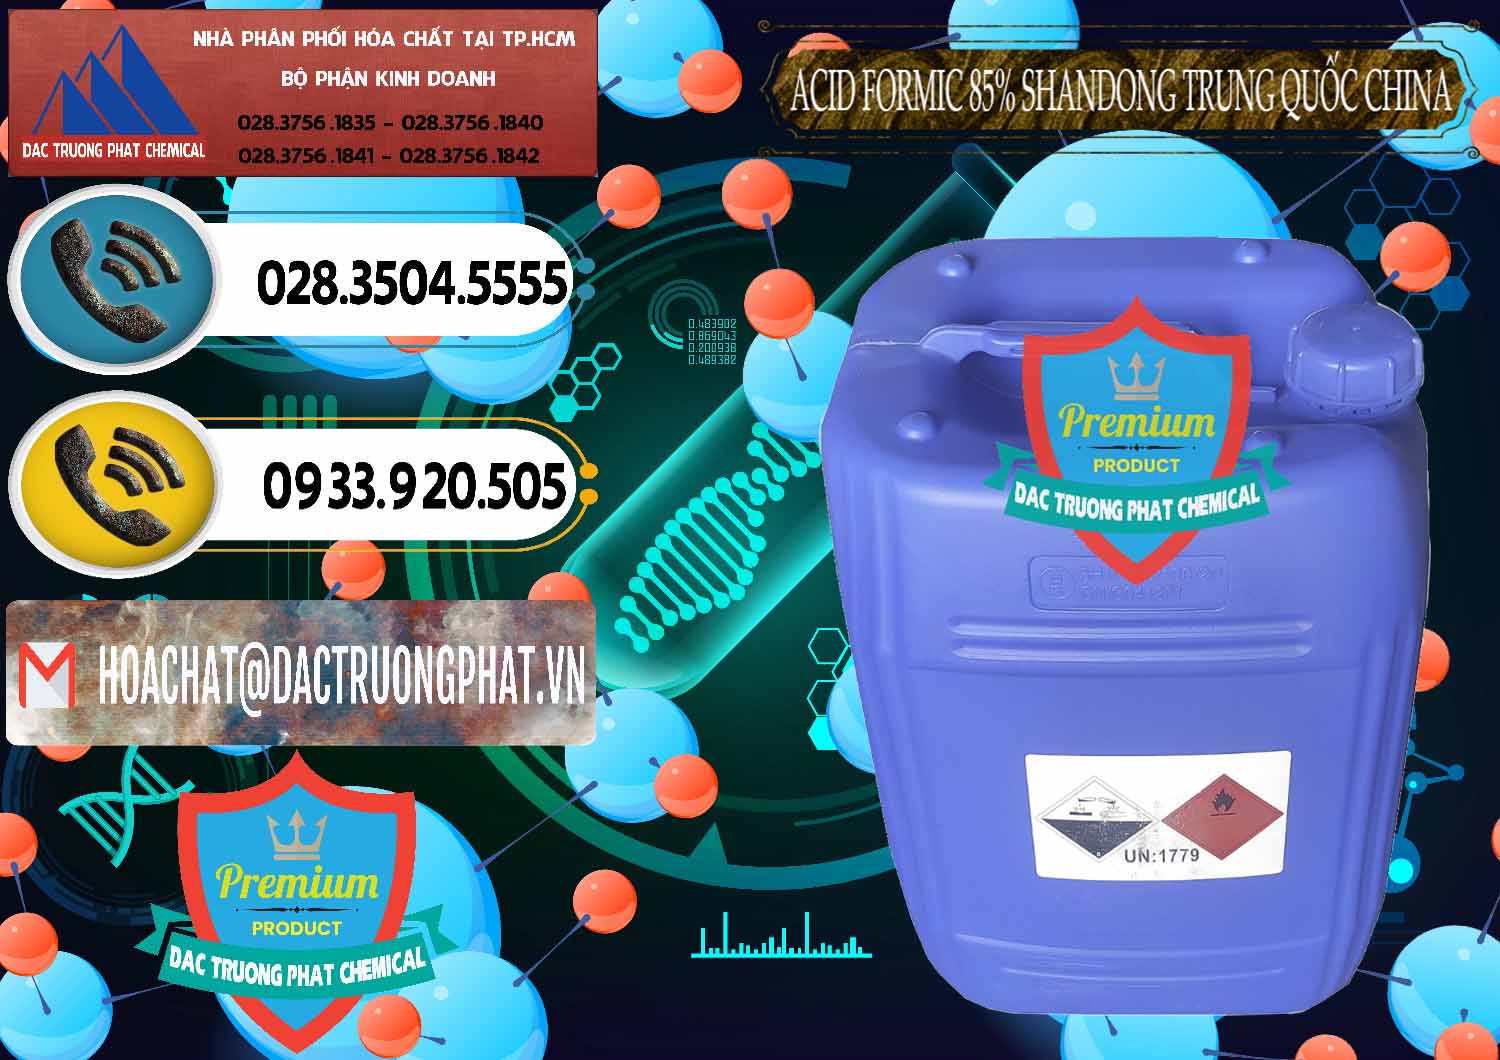 Đơn vị phân phối và bán Acid Formic - Axit Formic 85% Shandong Trung Quốc China - 0235 - Nhà cung cấp _ bán hóa chất tại TP.HCM - hoachatdetnhuom.vn